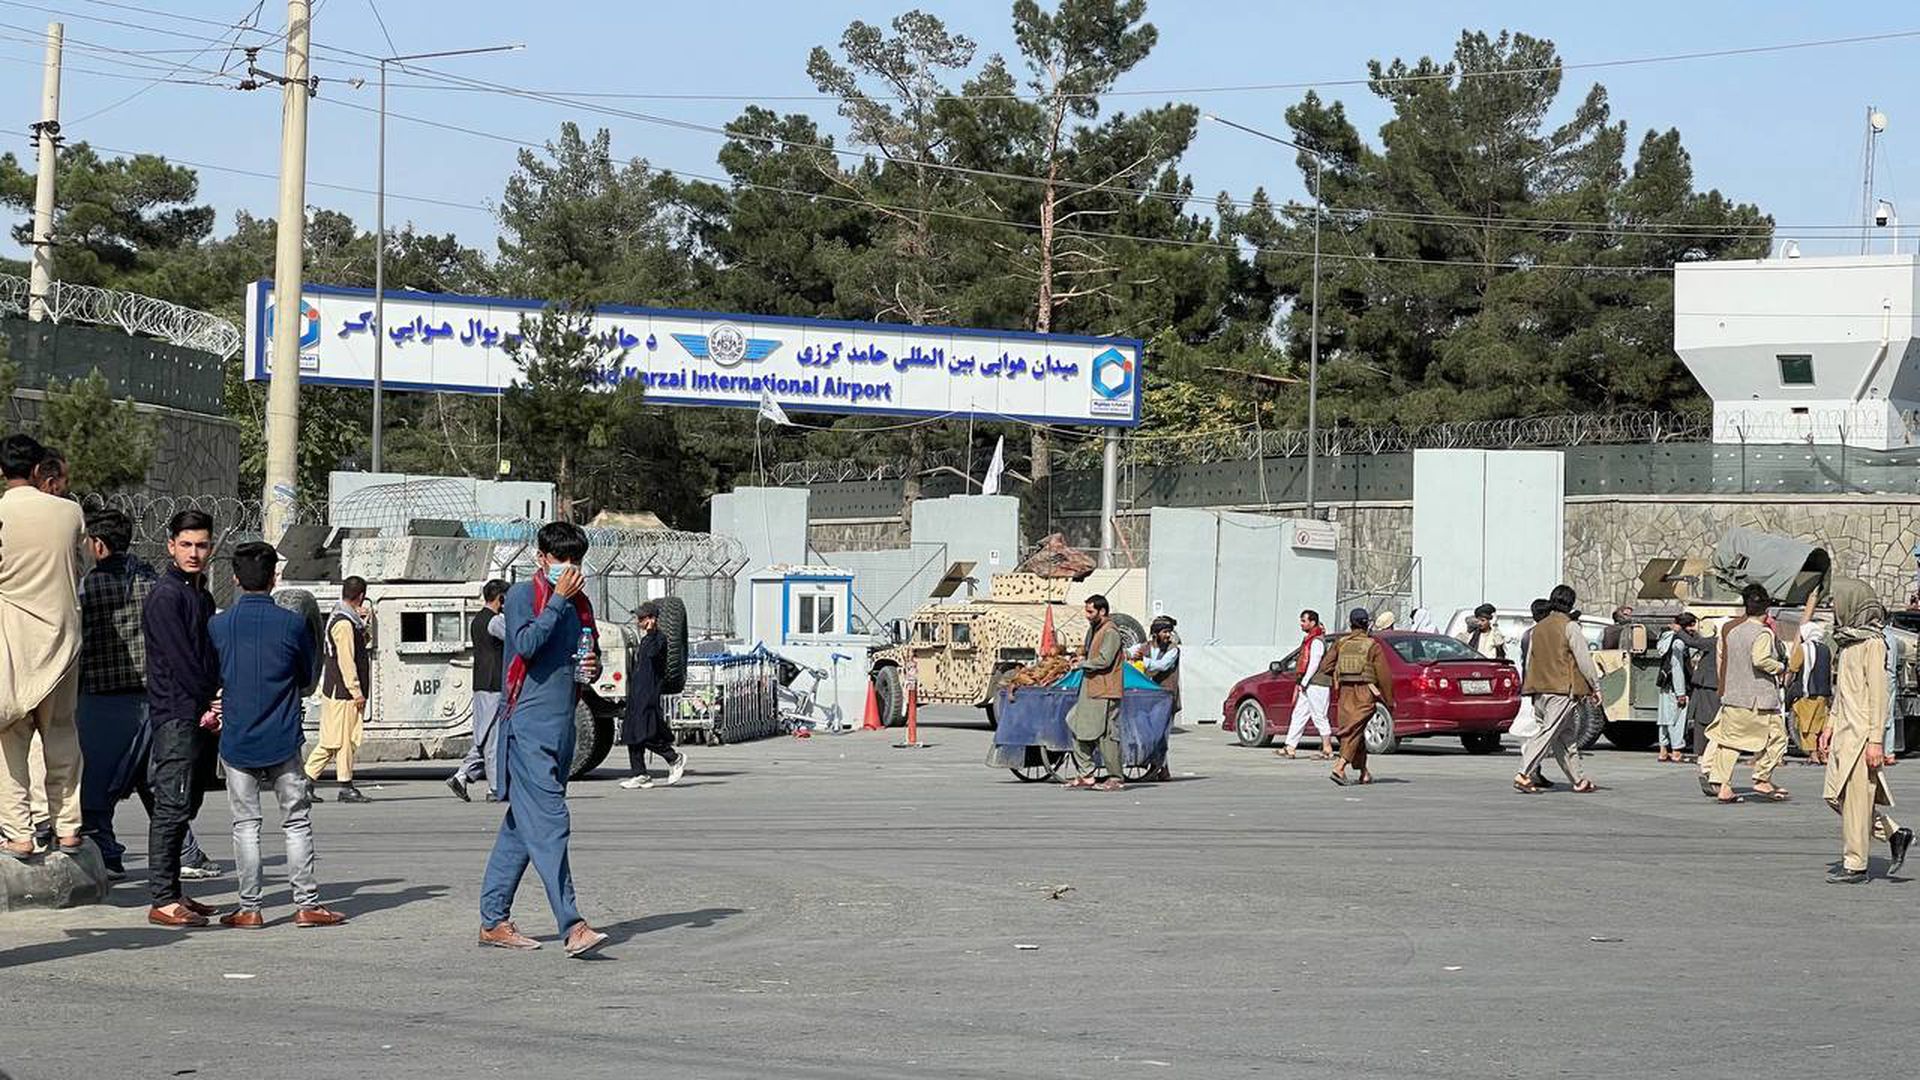 SHBA-të lajmërojnë amerikanët të mos shkojnë në aeroportin e Kabulit